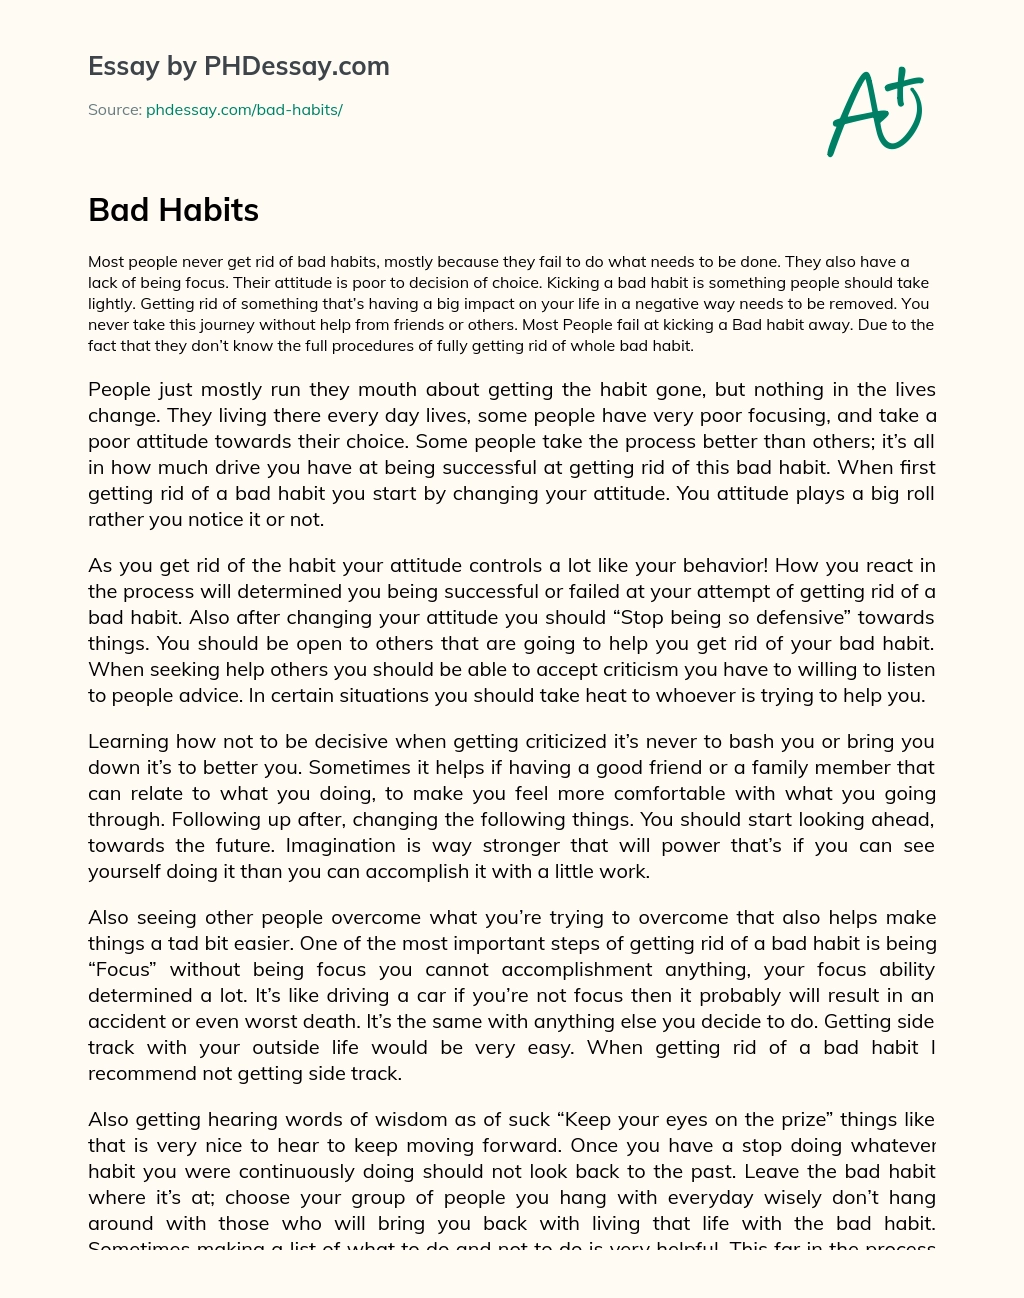 bad habits essay 200 words